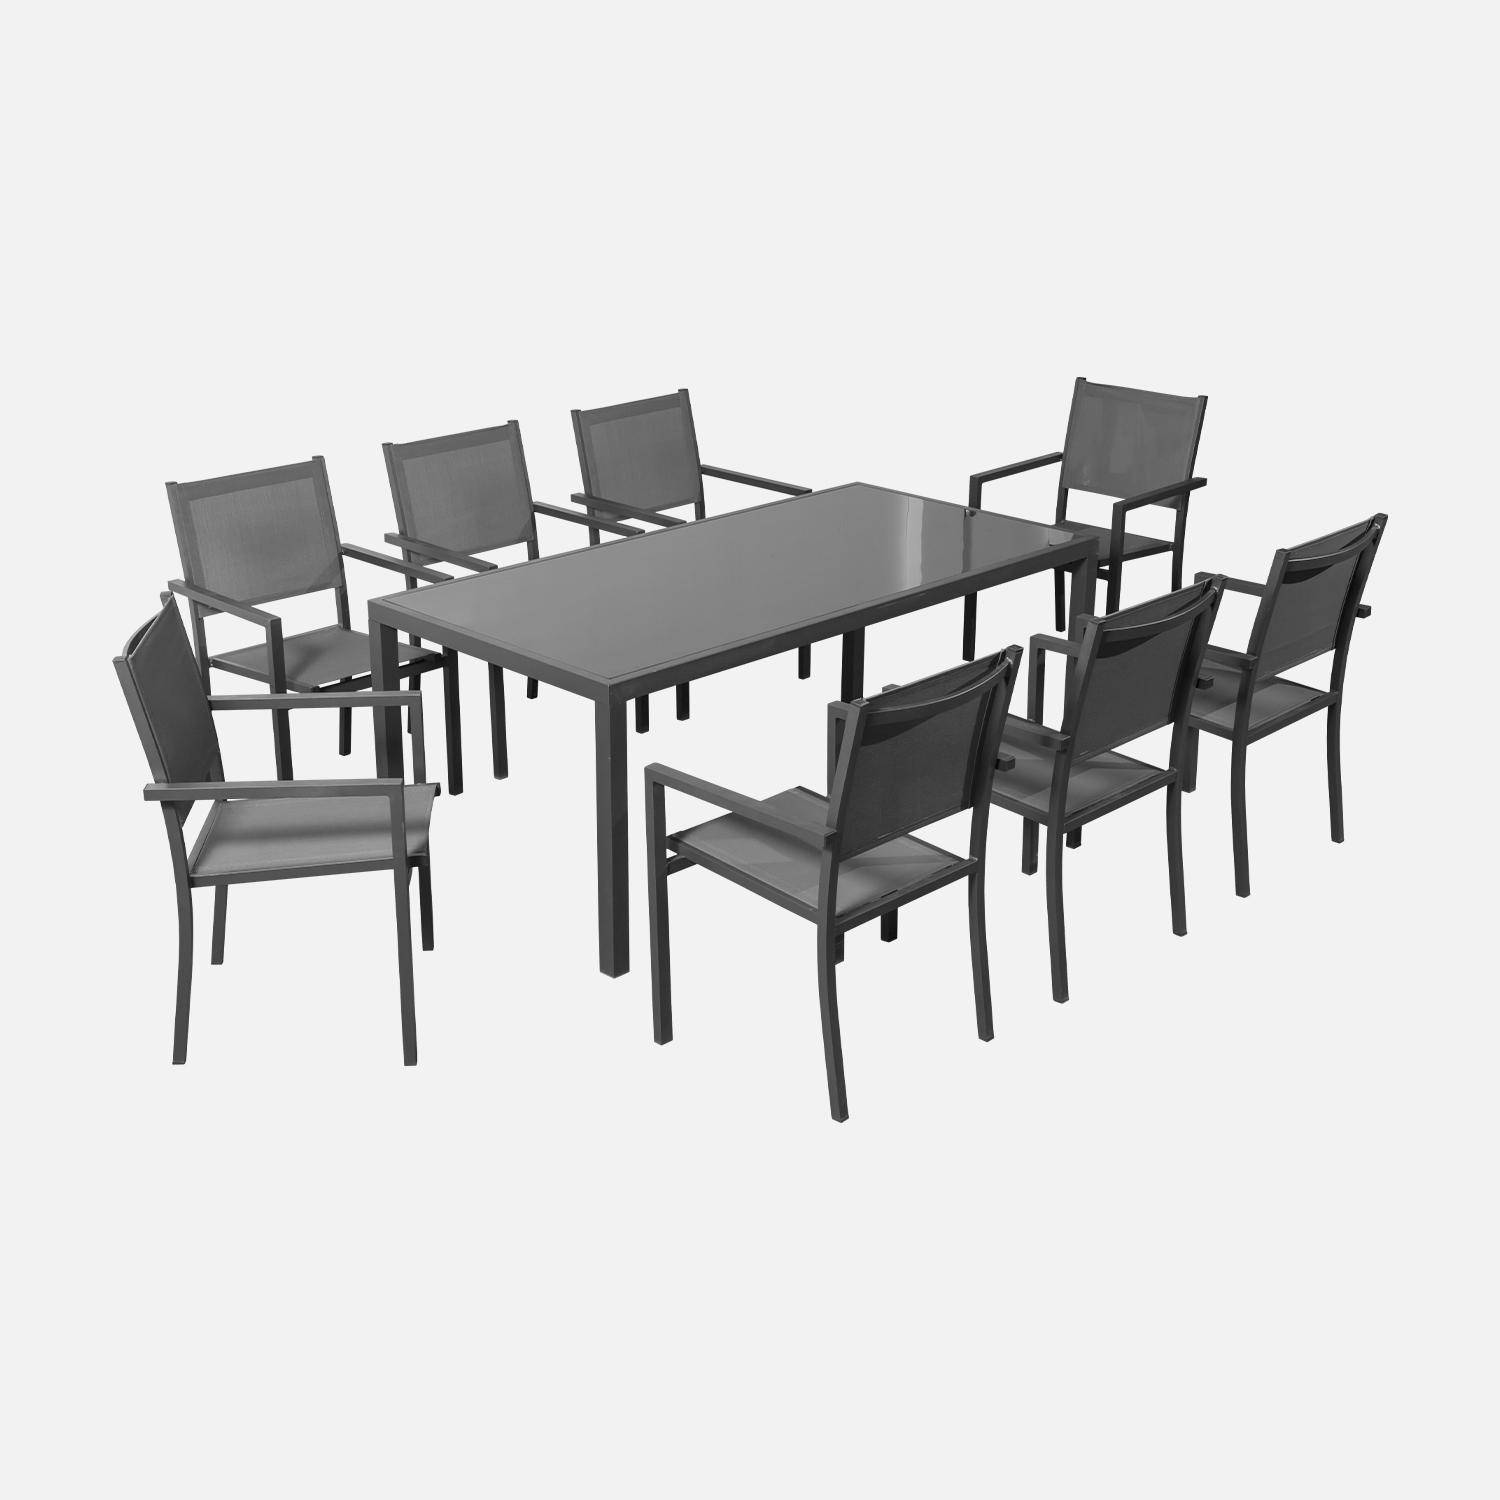 Salon de jardin en aluminium et textilène - Capua 180cm - Anthracite, gris - 8 places - 1 grande table rectangulaire, 8 fauteuils empilables Photo2